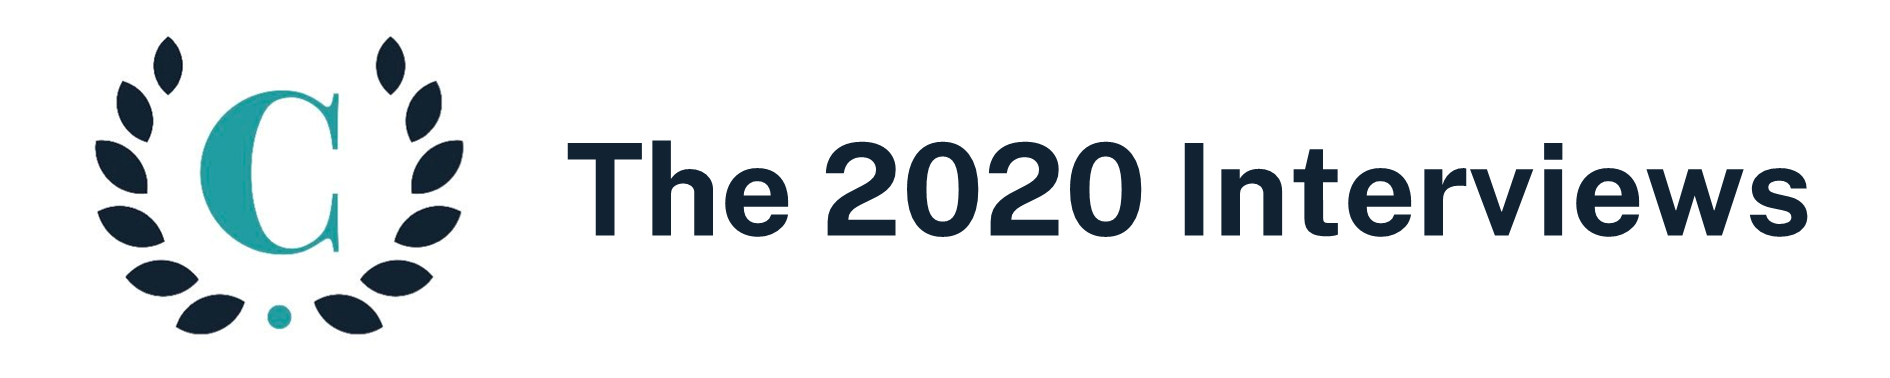 2020 Interviews Header.png